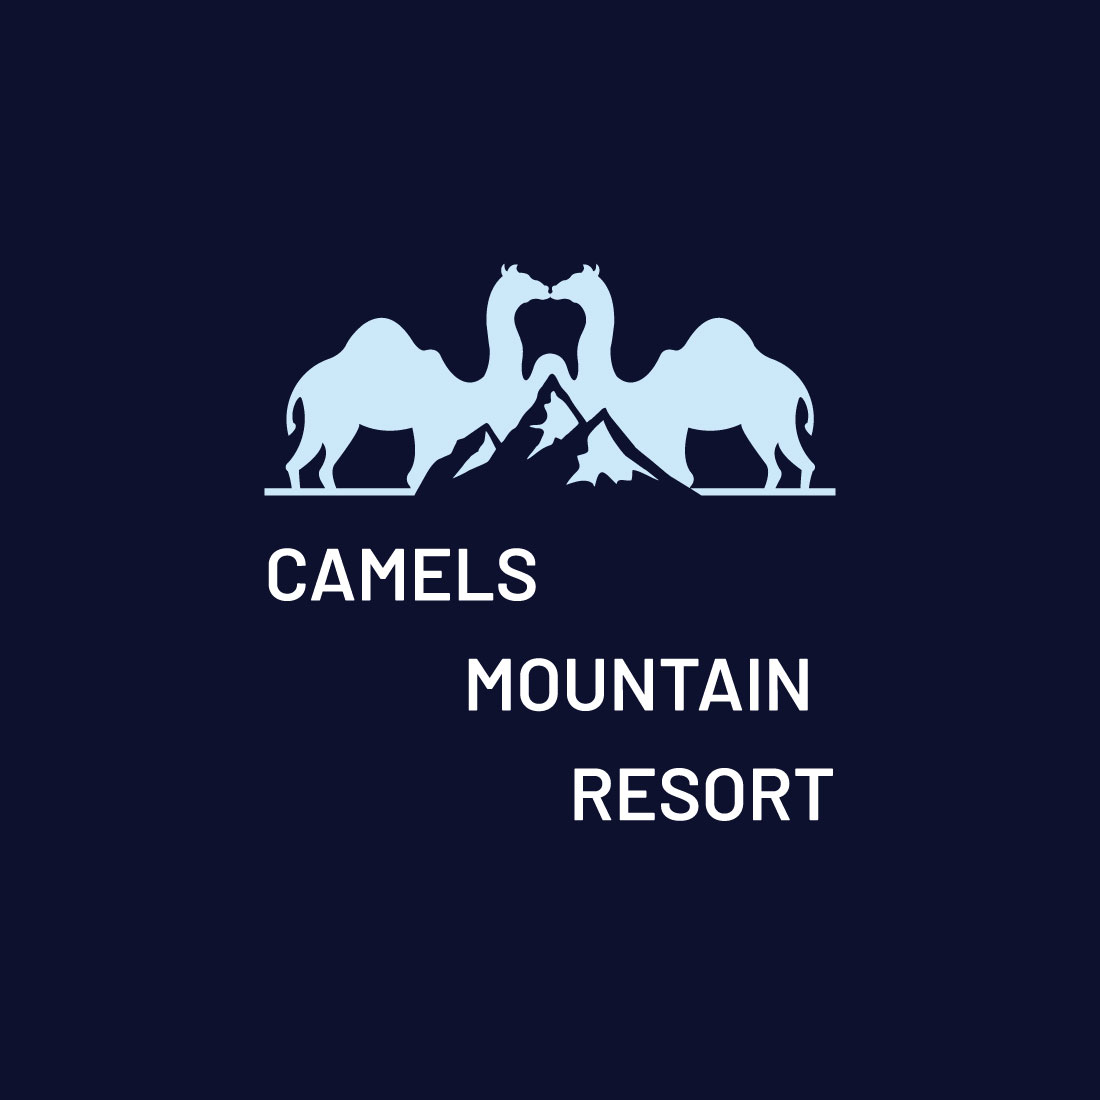 Camel Mountain Logo preview image.